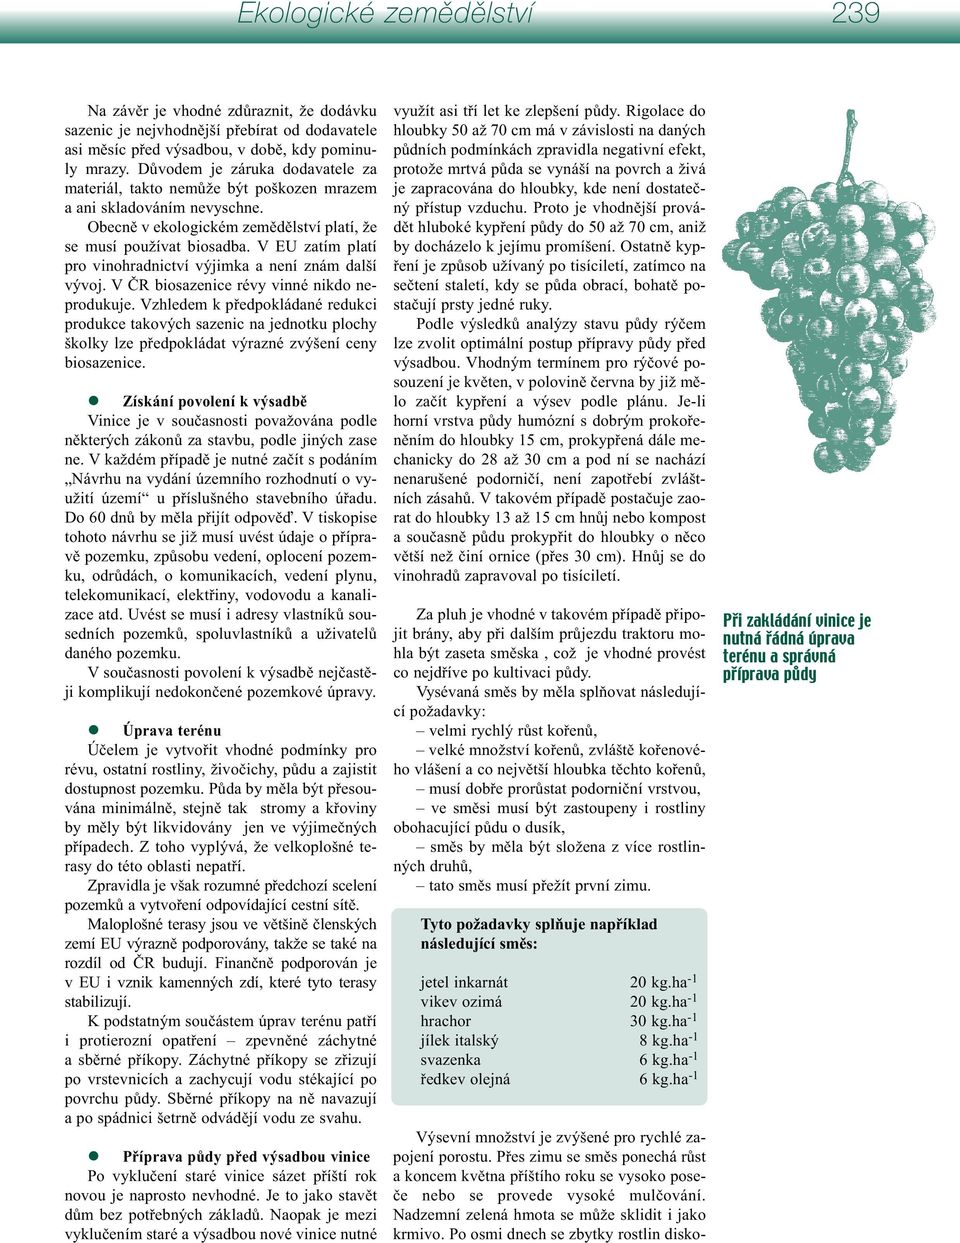 V EU zatím platí pro vinohradnictví výjimka a není znám další vývoj. V ČR biosazenice révy vinné nikdo neprodukuje.